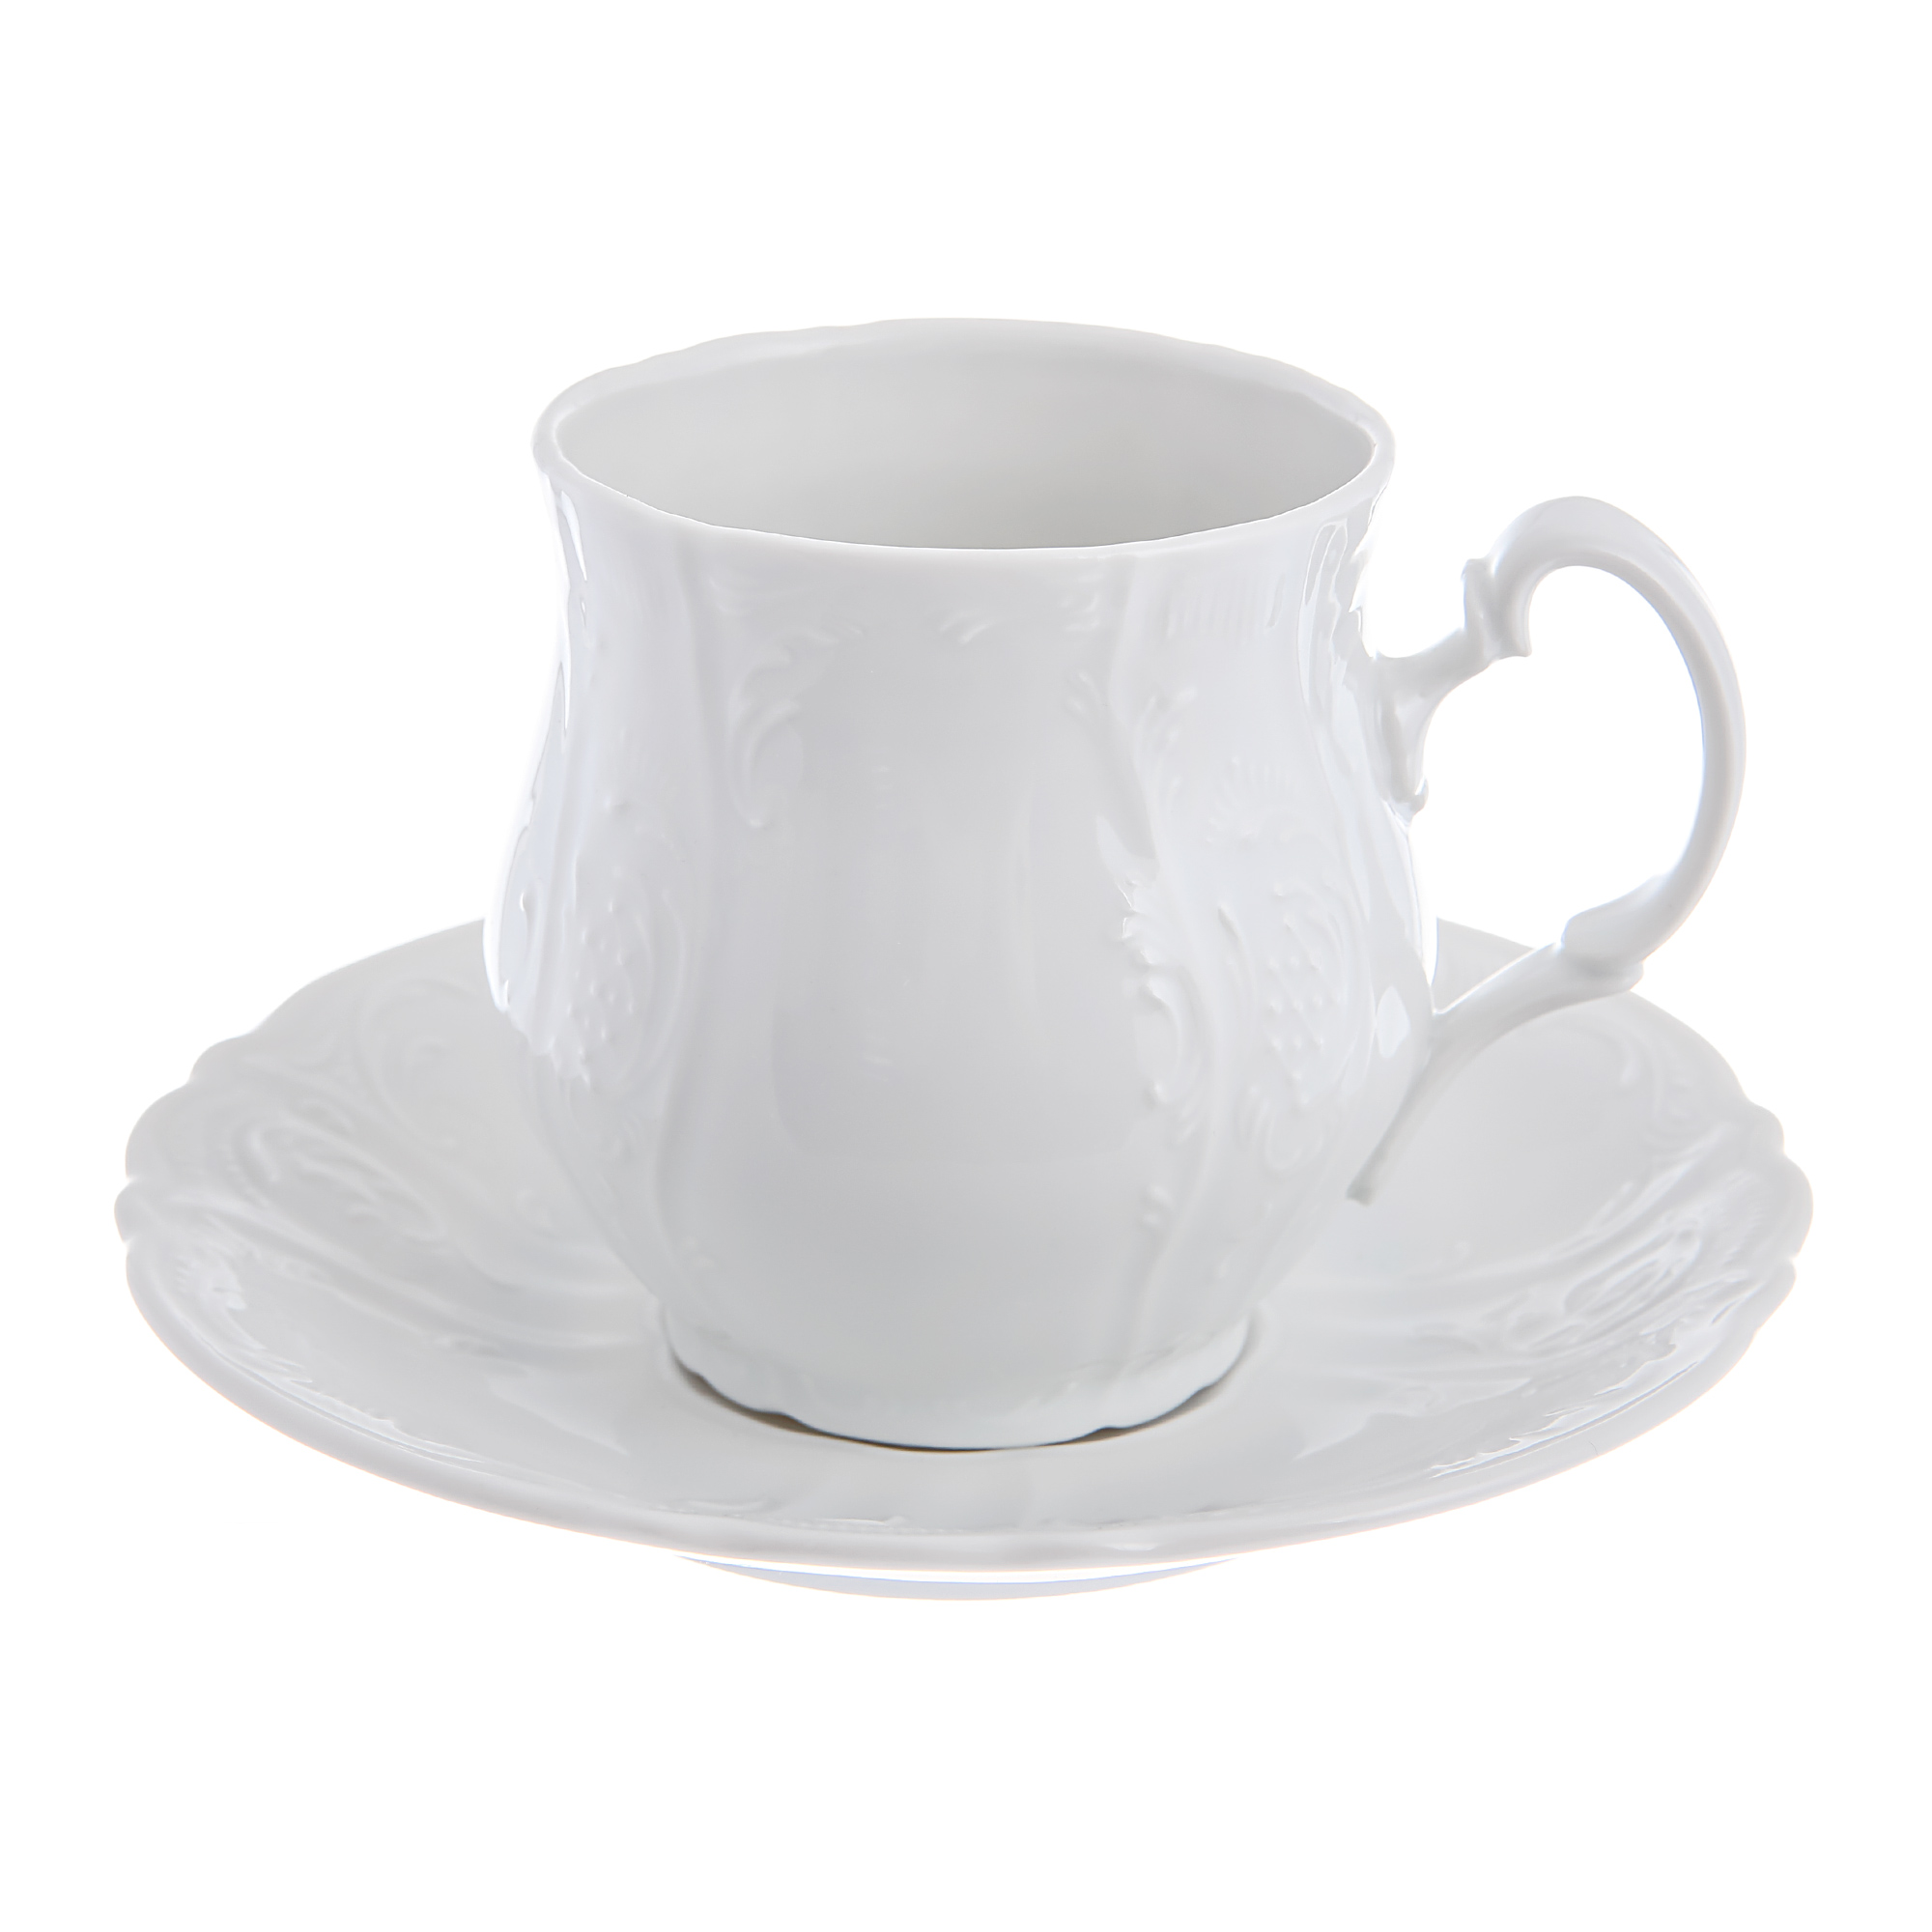 Чашка для чая 250мл с блюдцем: недекорированная Bernadotte чашка для чая ручная роспись искусственная чашка для чая азиатская чашка для чая керамическая чашка для питья